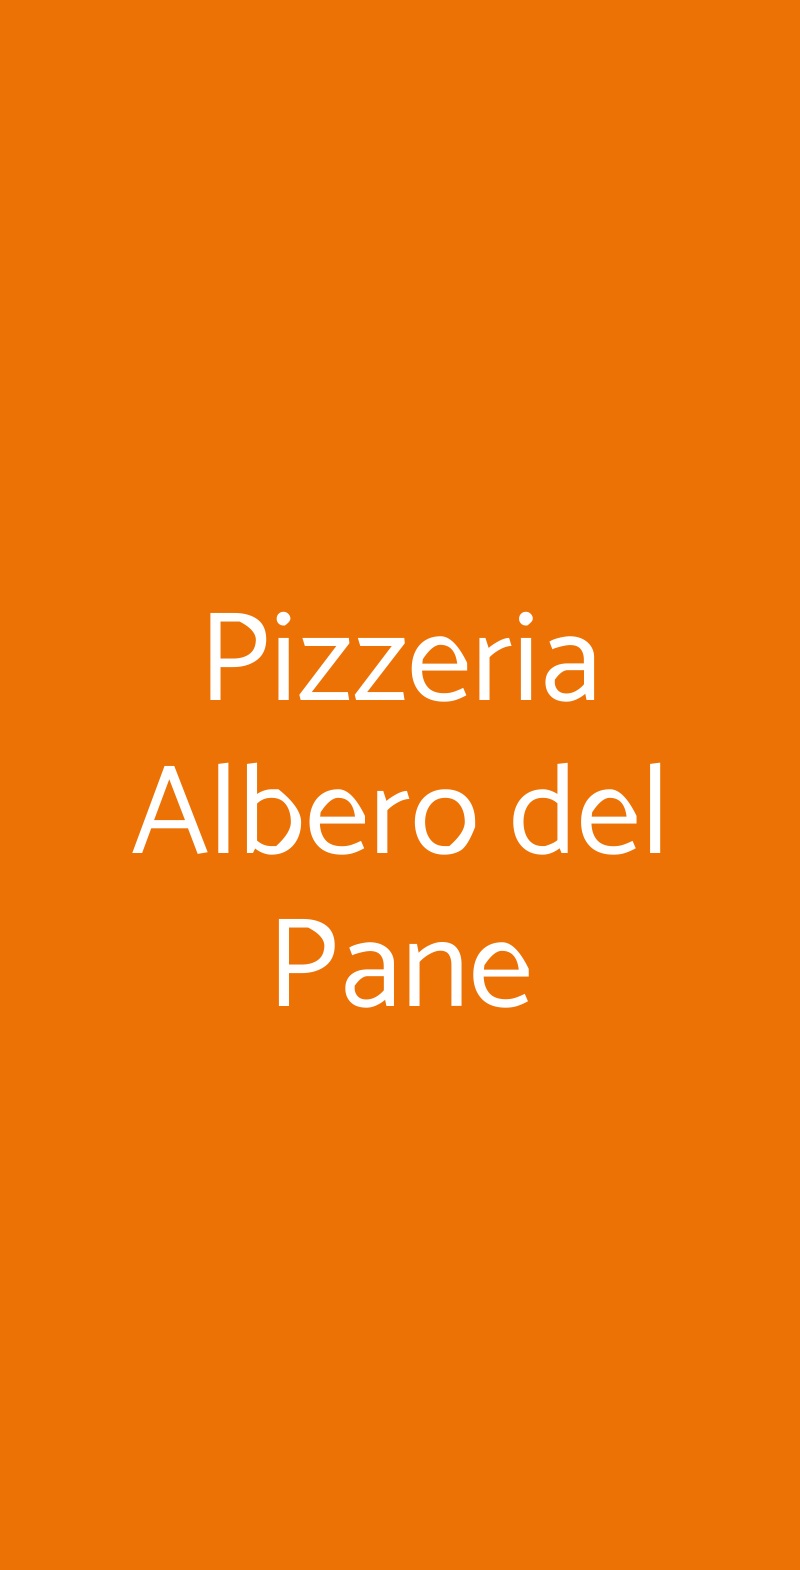 Pizzeria Albero del Pane Sestri Levante menù 1 pagina